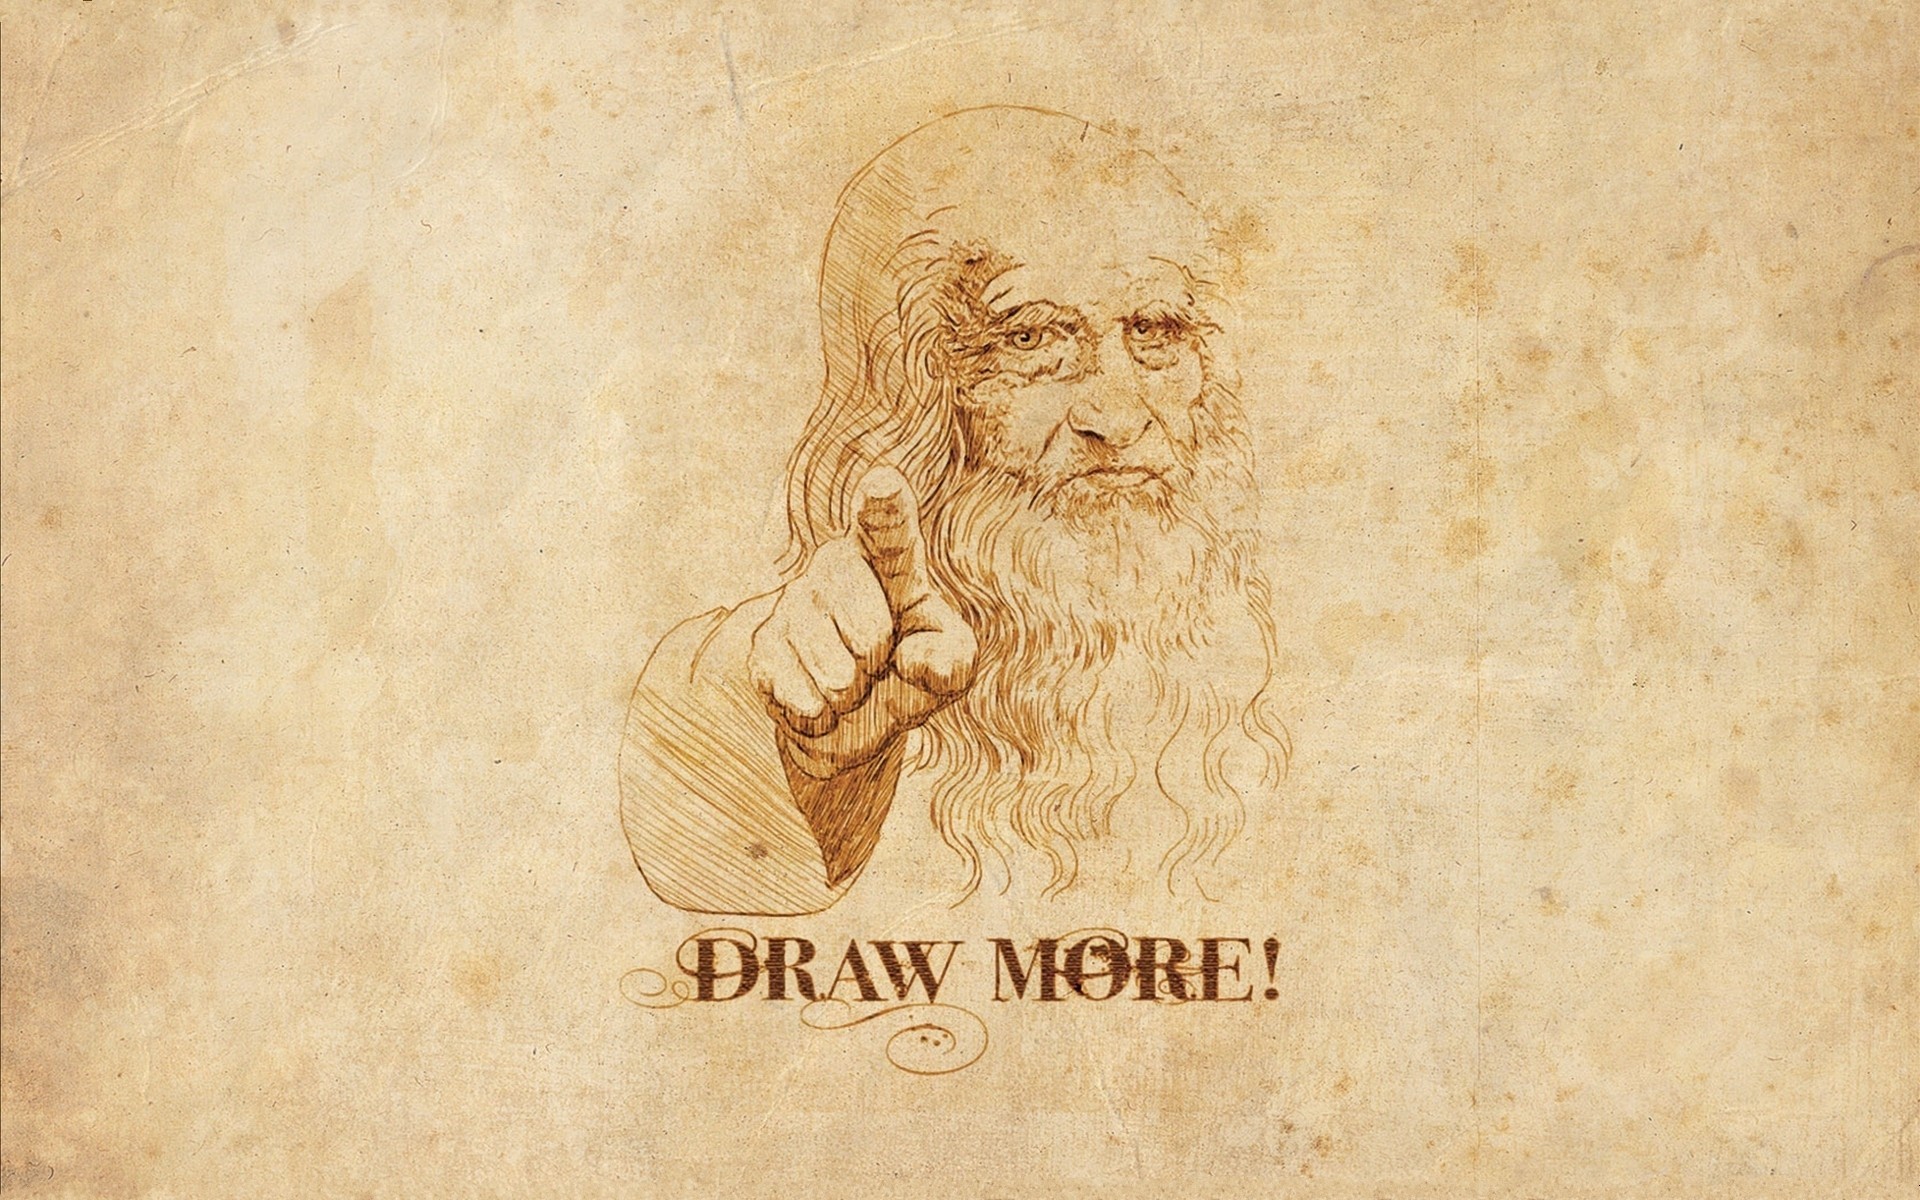 레오나르도 다빈치의 최후의 만찬 원래 그림 벽지,본문,수염,폰트,미술,삽화